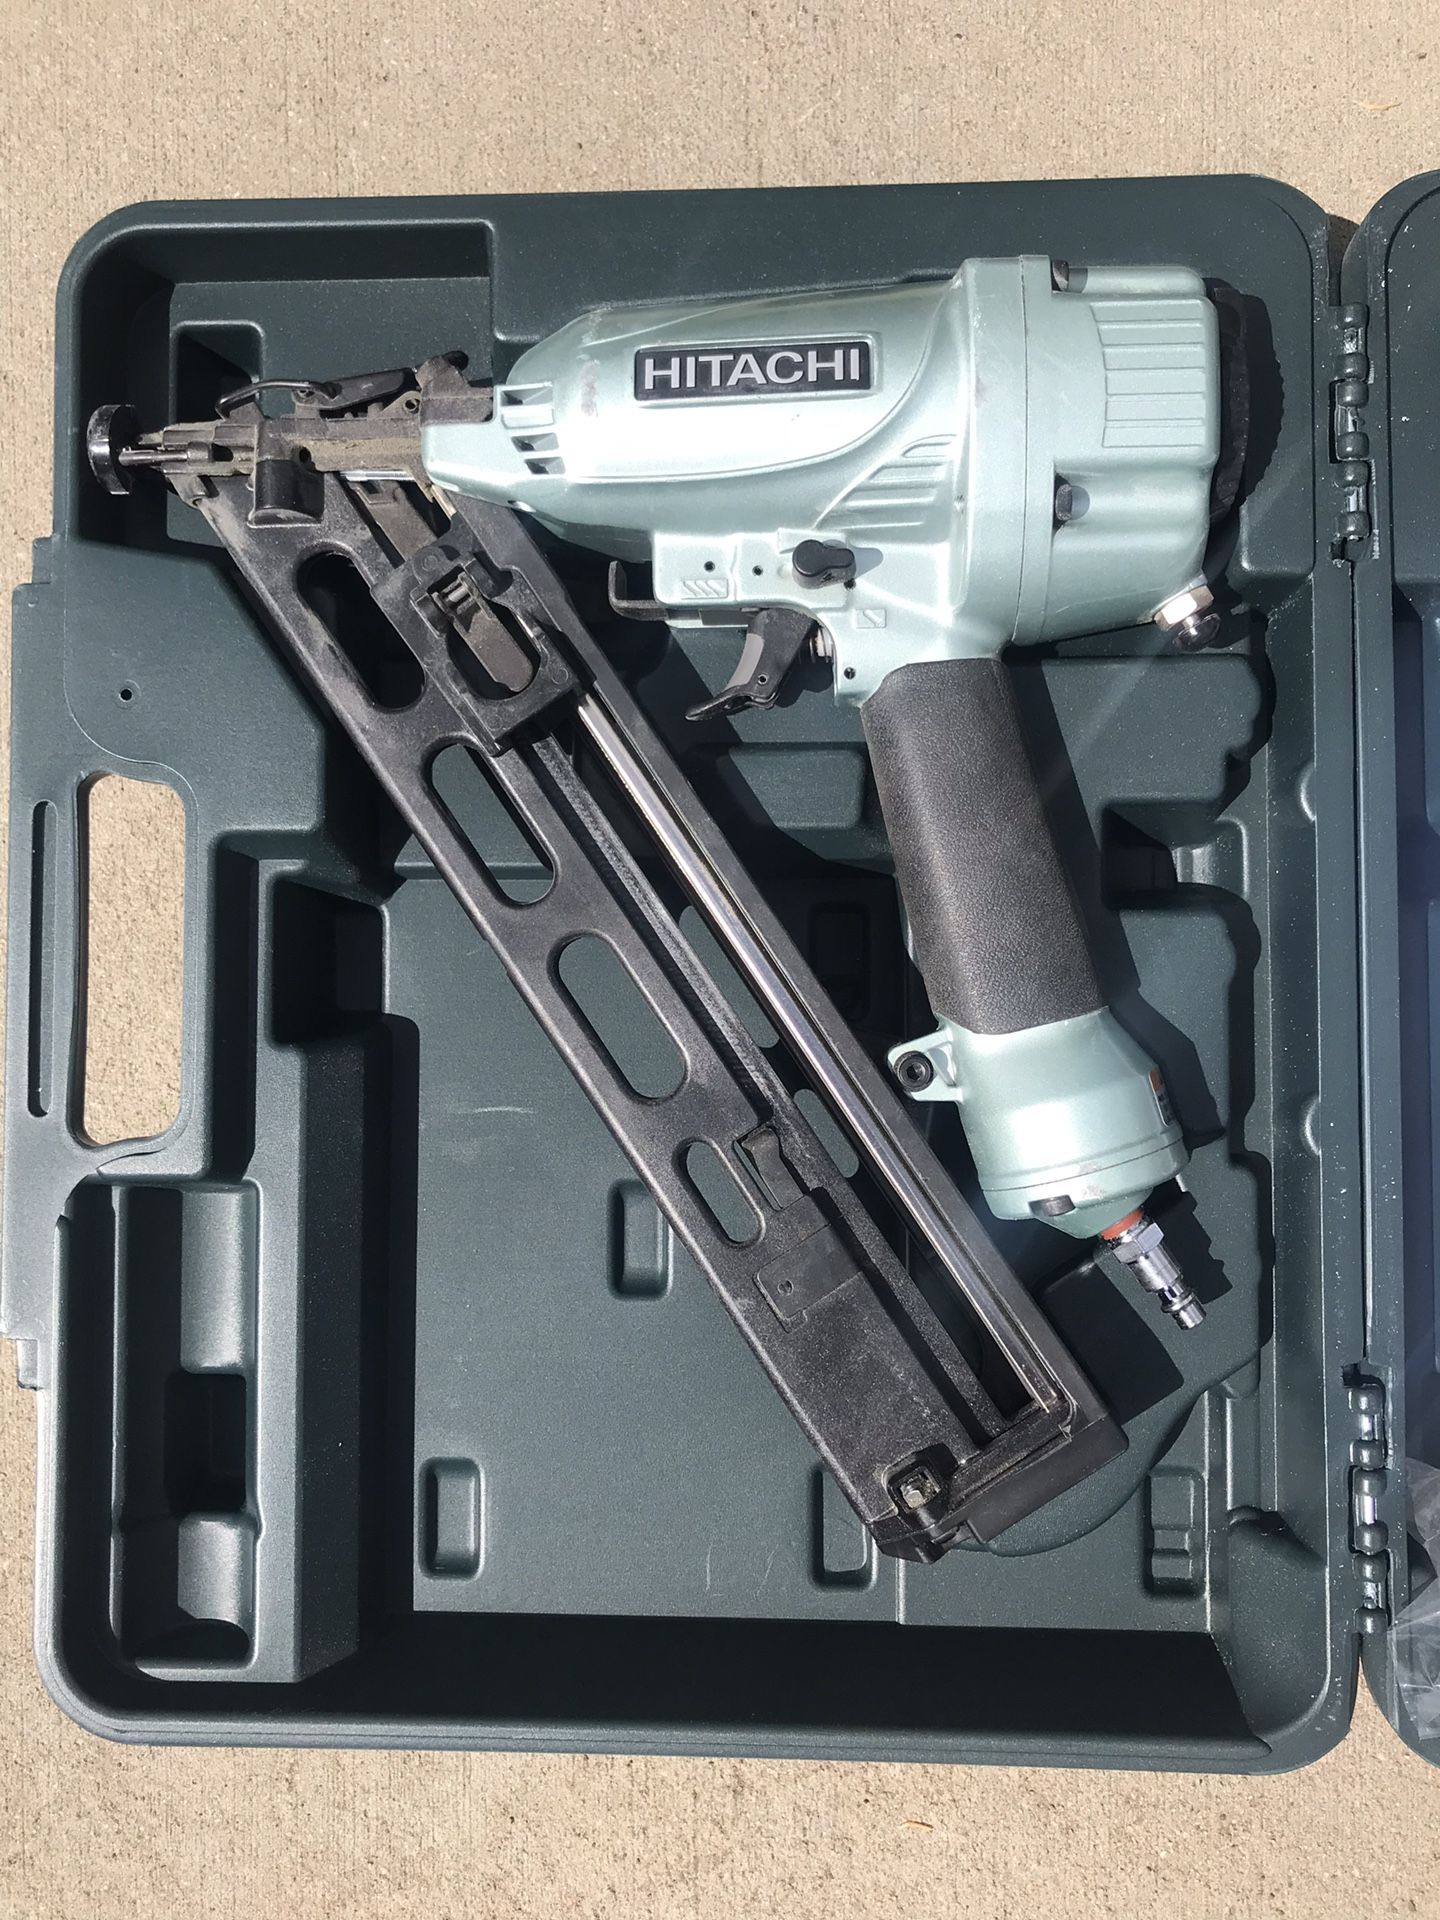 Hitachi 2.5-in 15-Gauge Finish Nail Gun